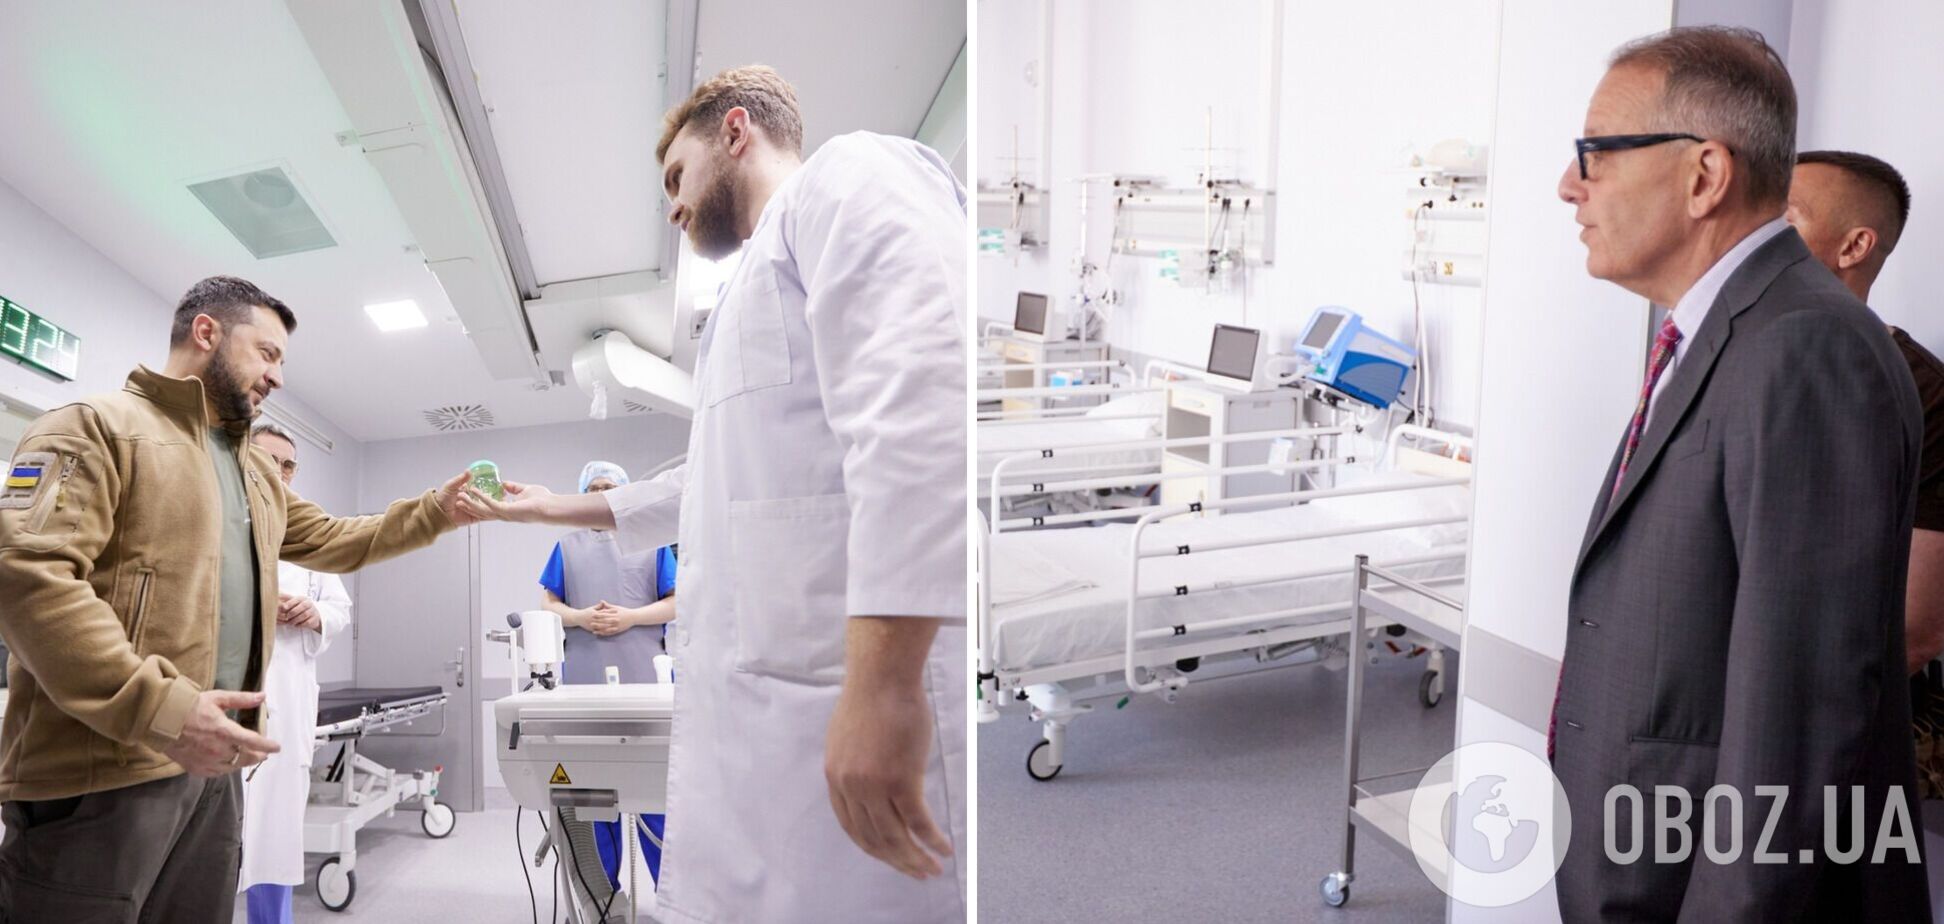 'Это новый уровень медицины': в Центре кардиологии и кардиохирургии в Киеве открыли прогрессивные отделения